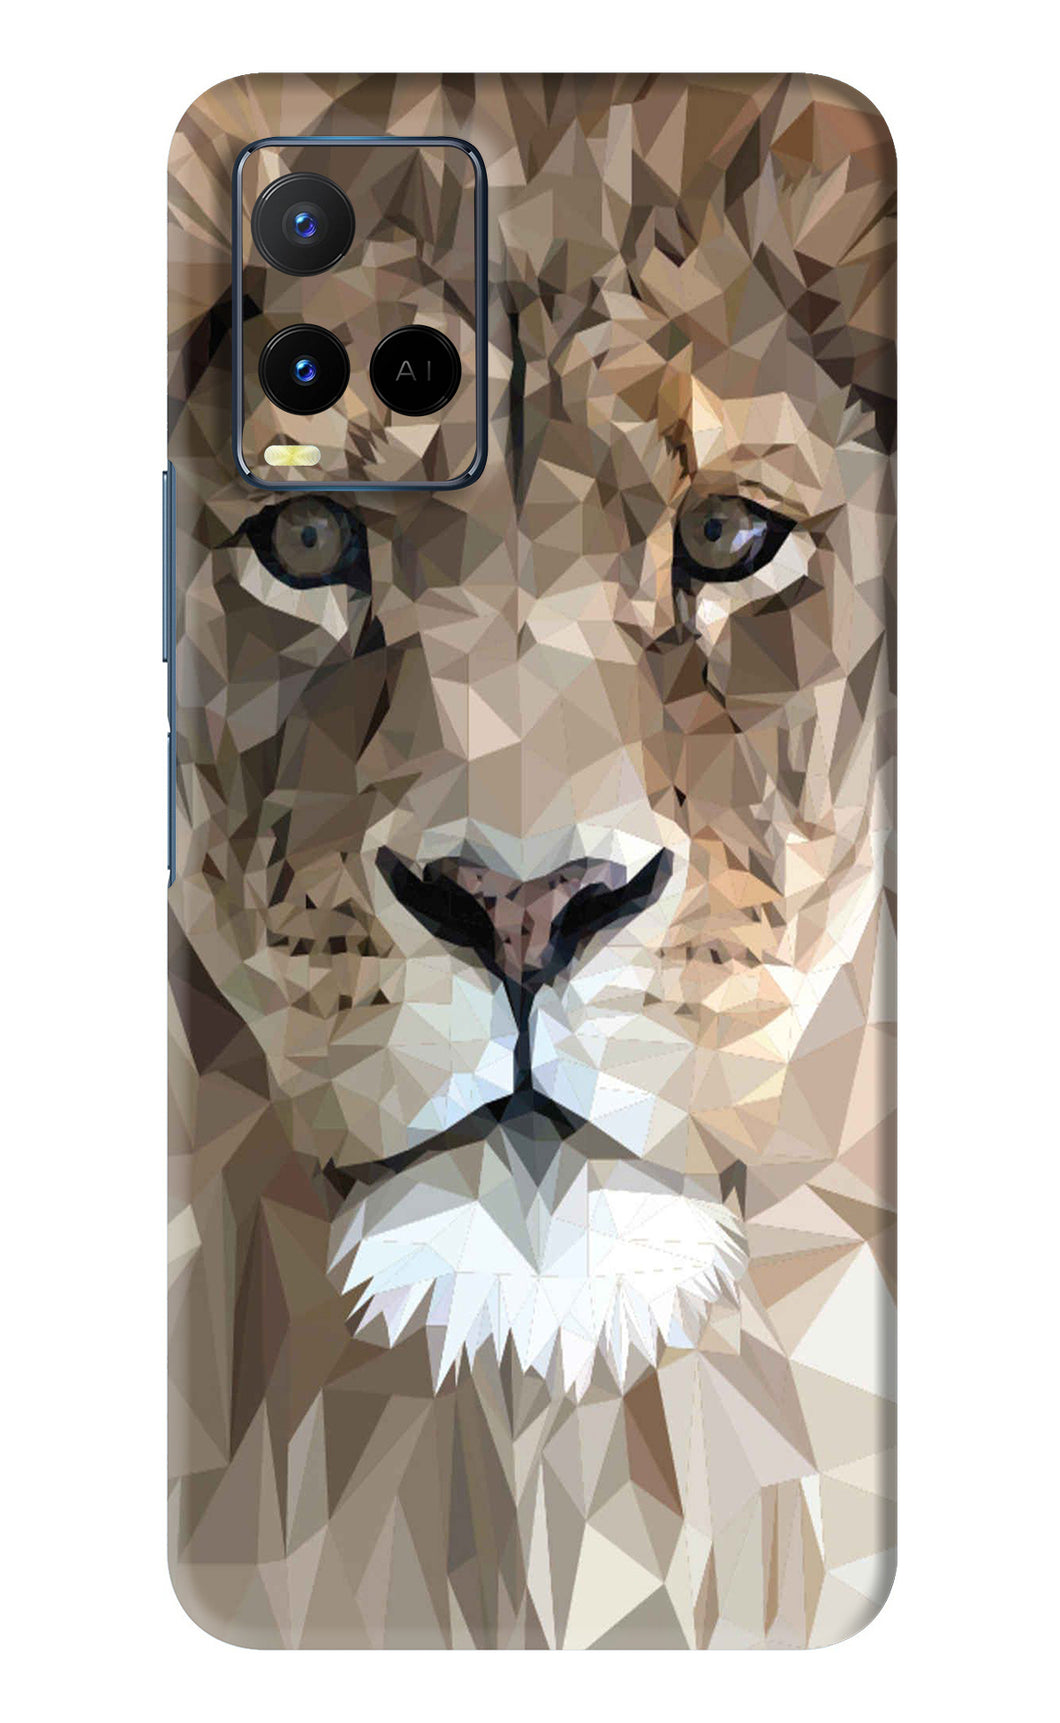 Lion Art Vivo Y21 Back Skin Wrap